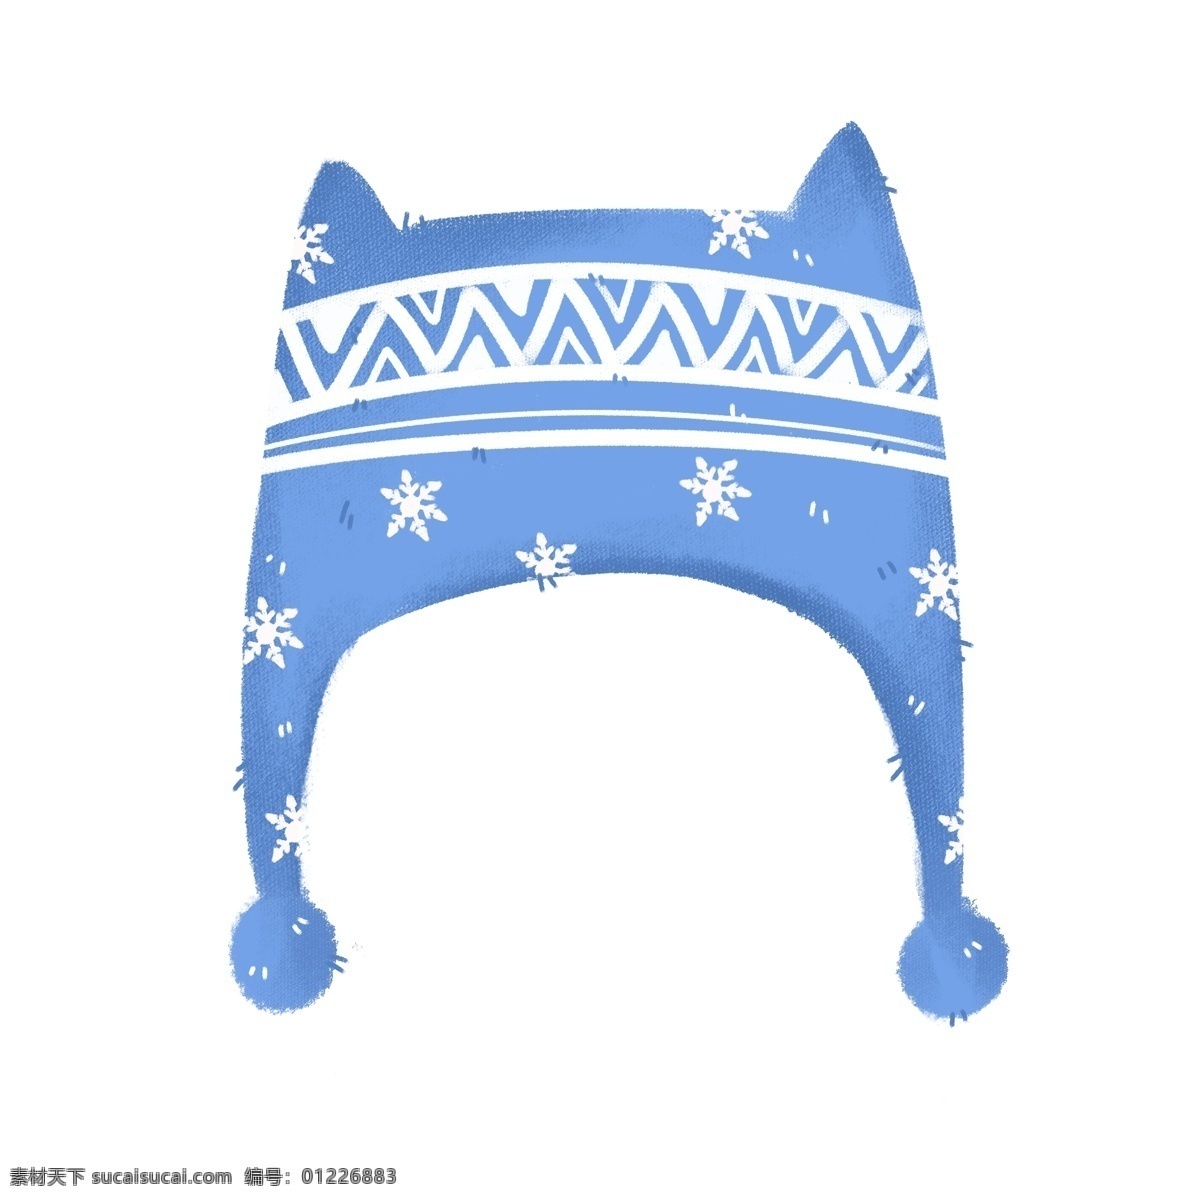 手绘 冬季 保暖 护耳 帽 插画 冬季保暖 护耳帽 保暖用品 生活用品 卡通儿童帽 蓝色儿童帽 手绘帽子